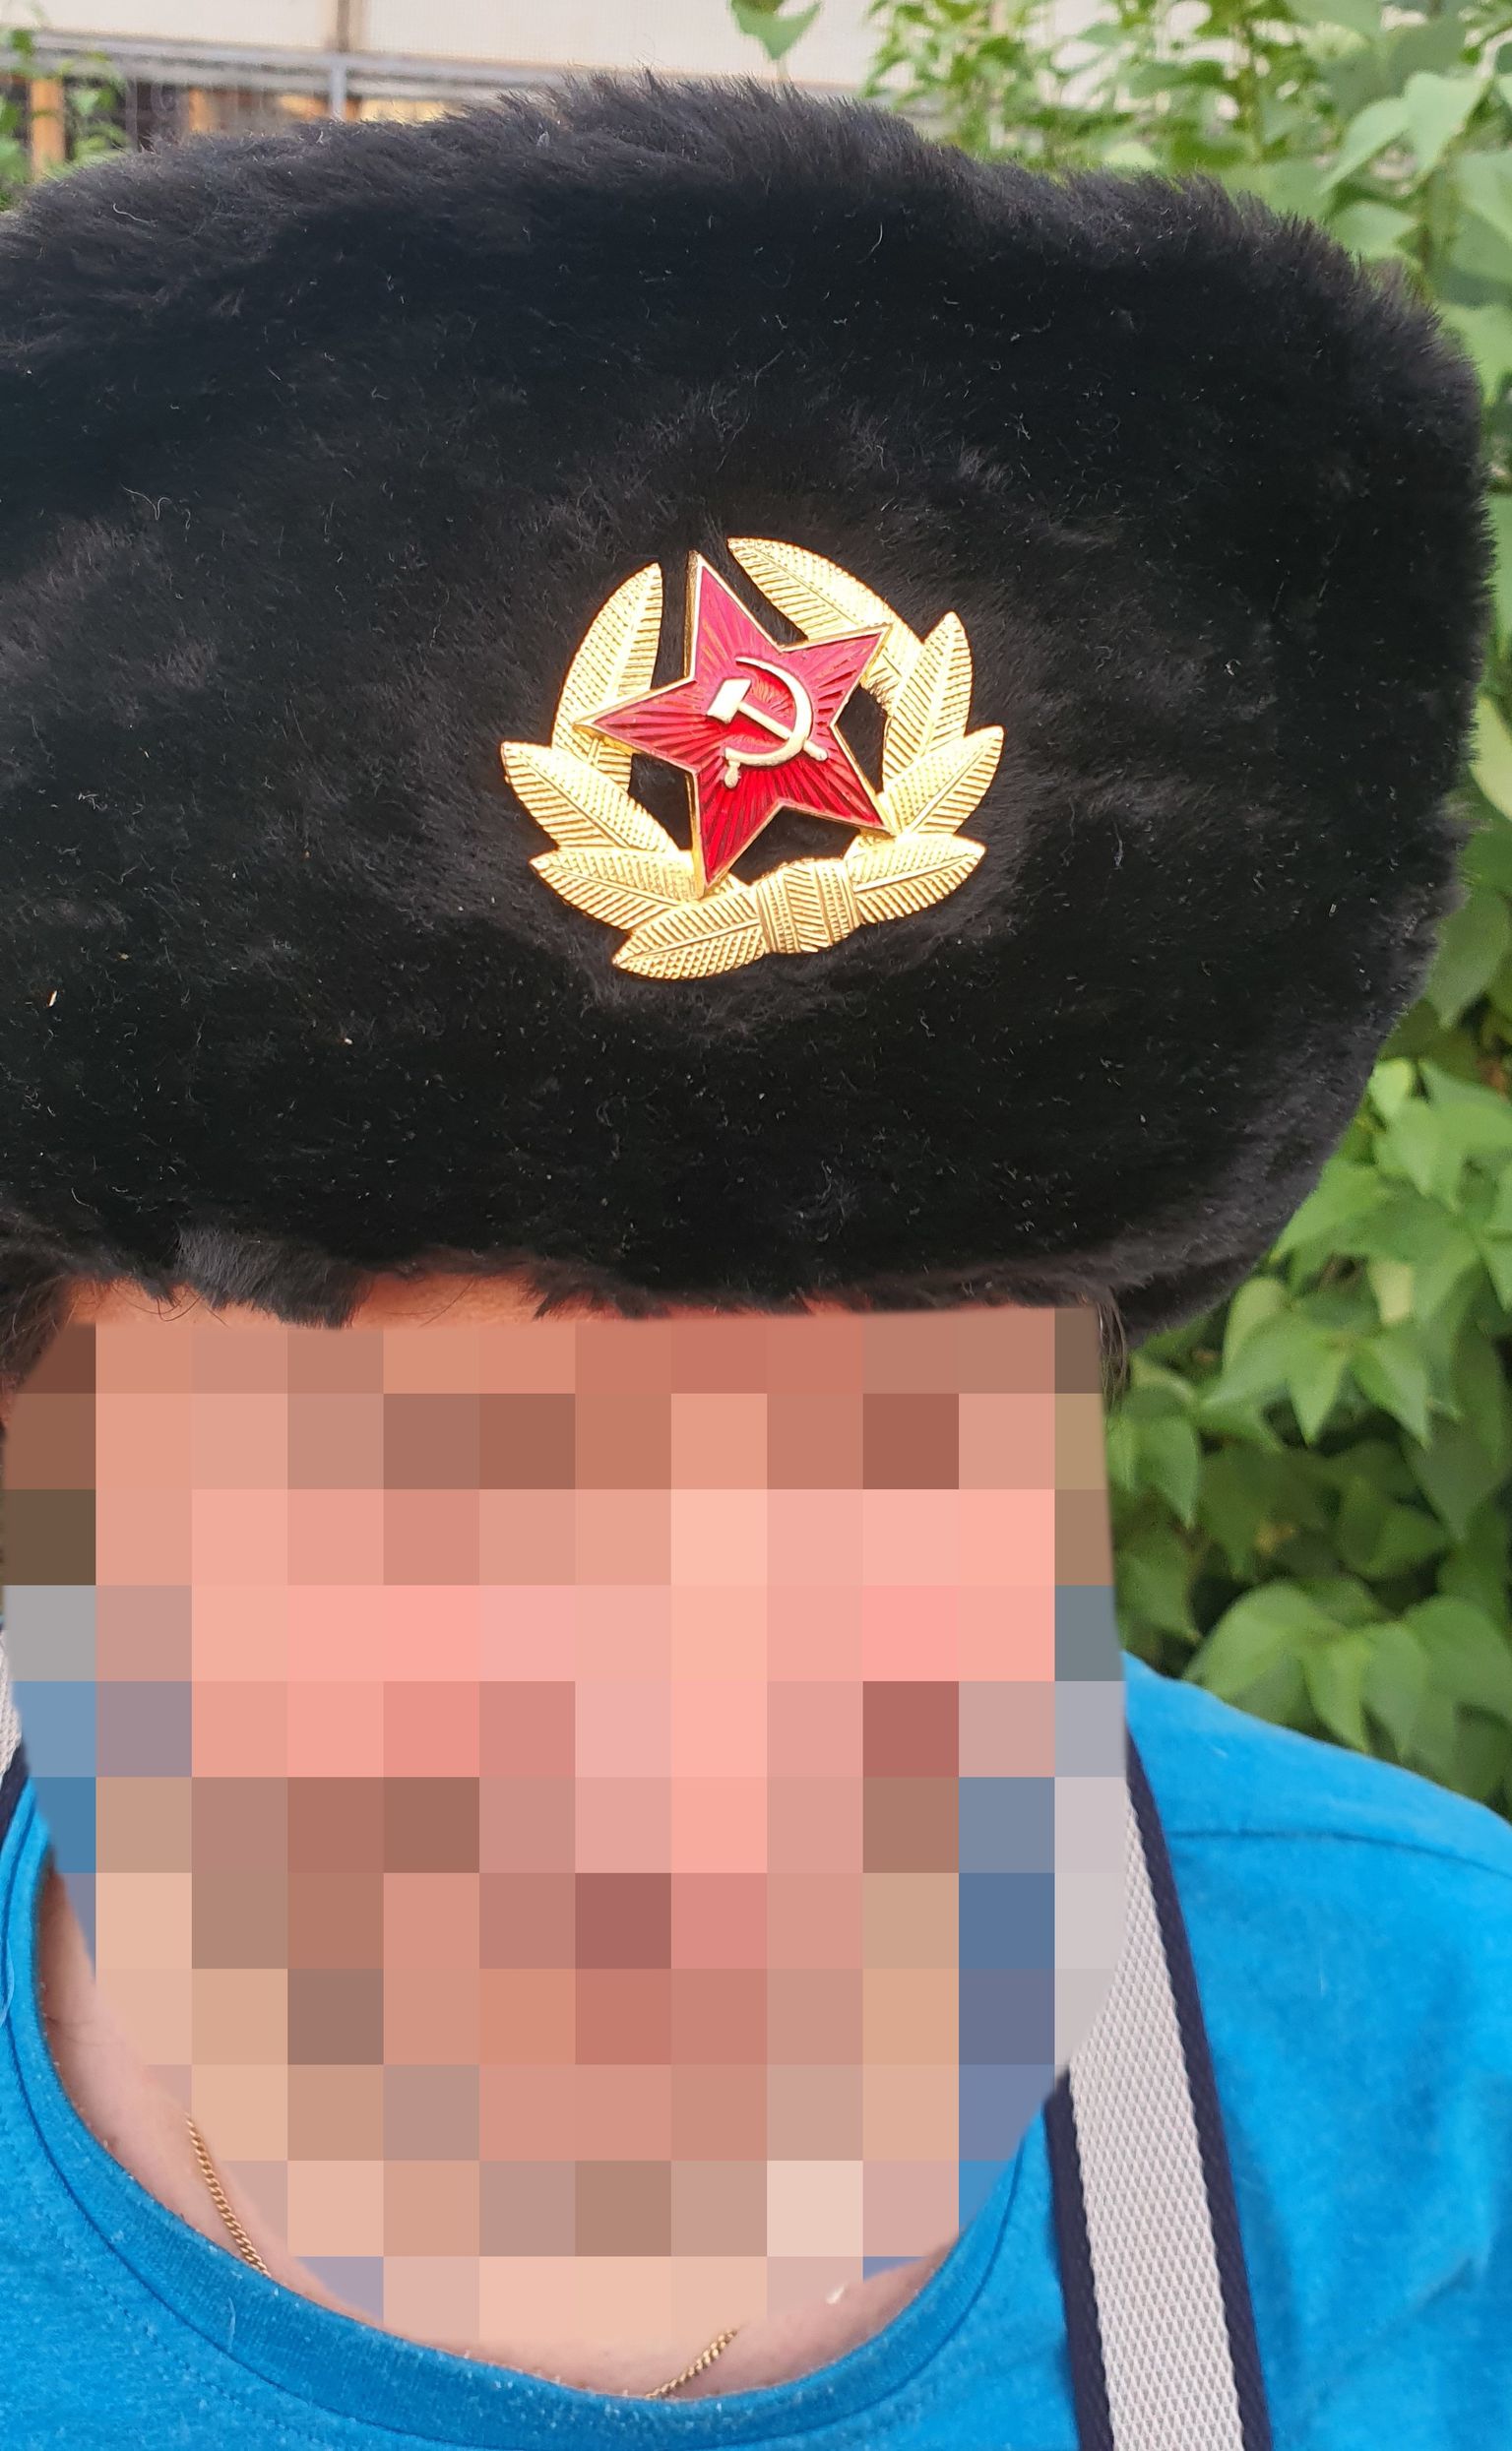 52 gadus vecs vīrietis Ziepniekkalnā pastaigājas ar Krievijas agresiju slavinošu simboliku